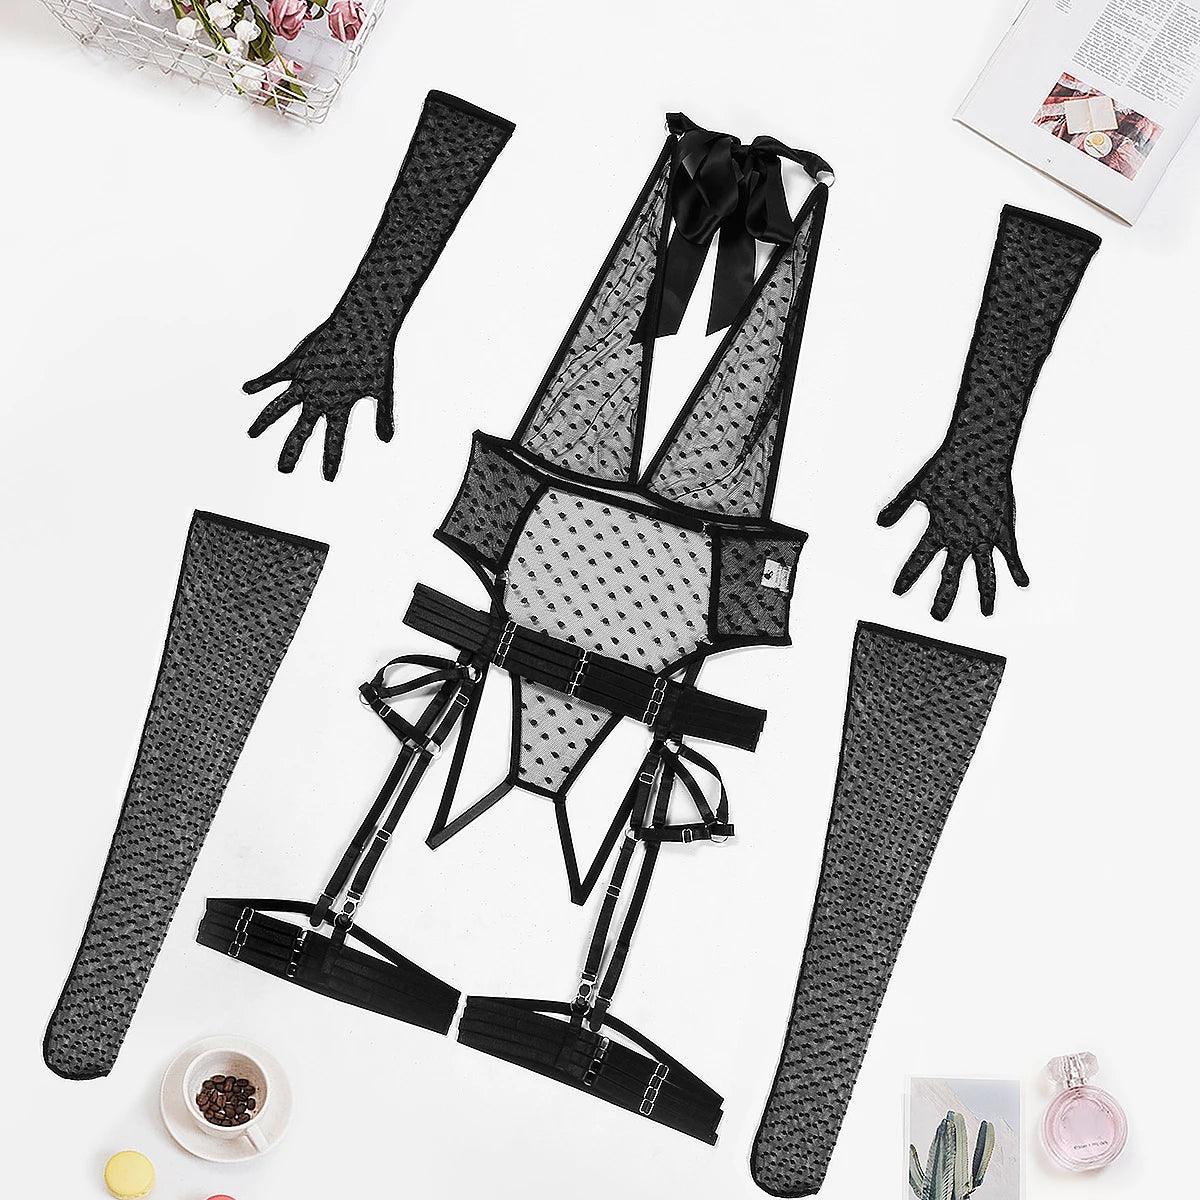 Förtrollande Polka Dot Bodysuit Set med Handskar Strumpbyxor
Kvinnlig Polka Dot Bodysuit Set med Handskar Strumpor - WIQ